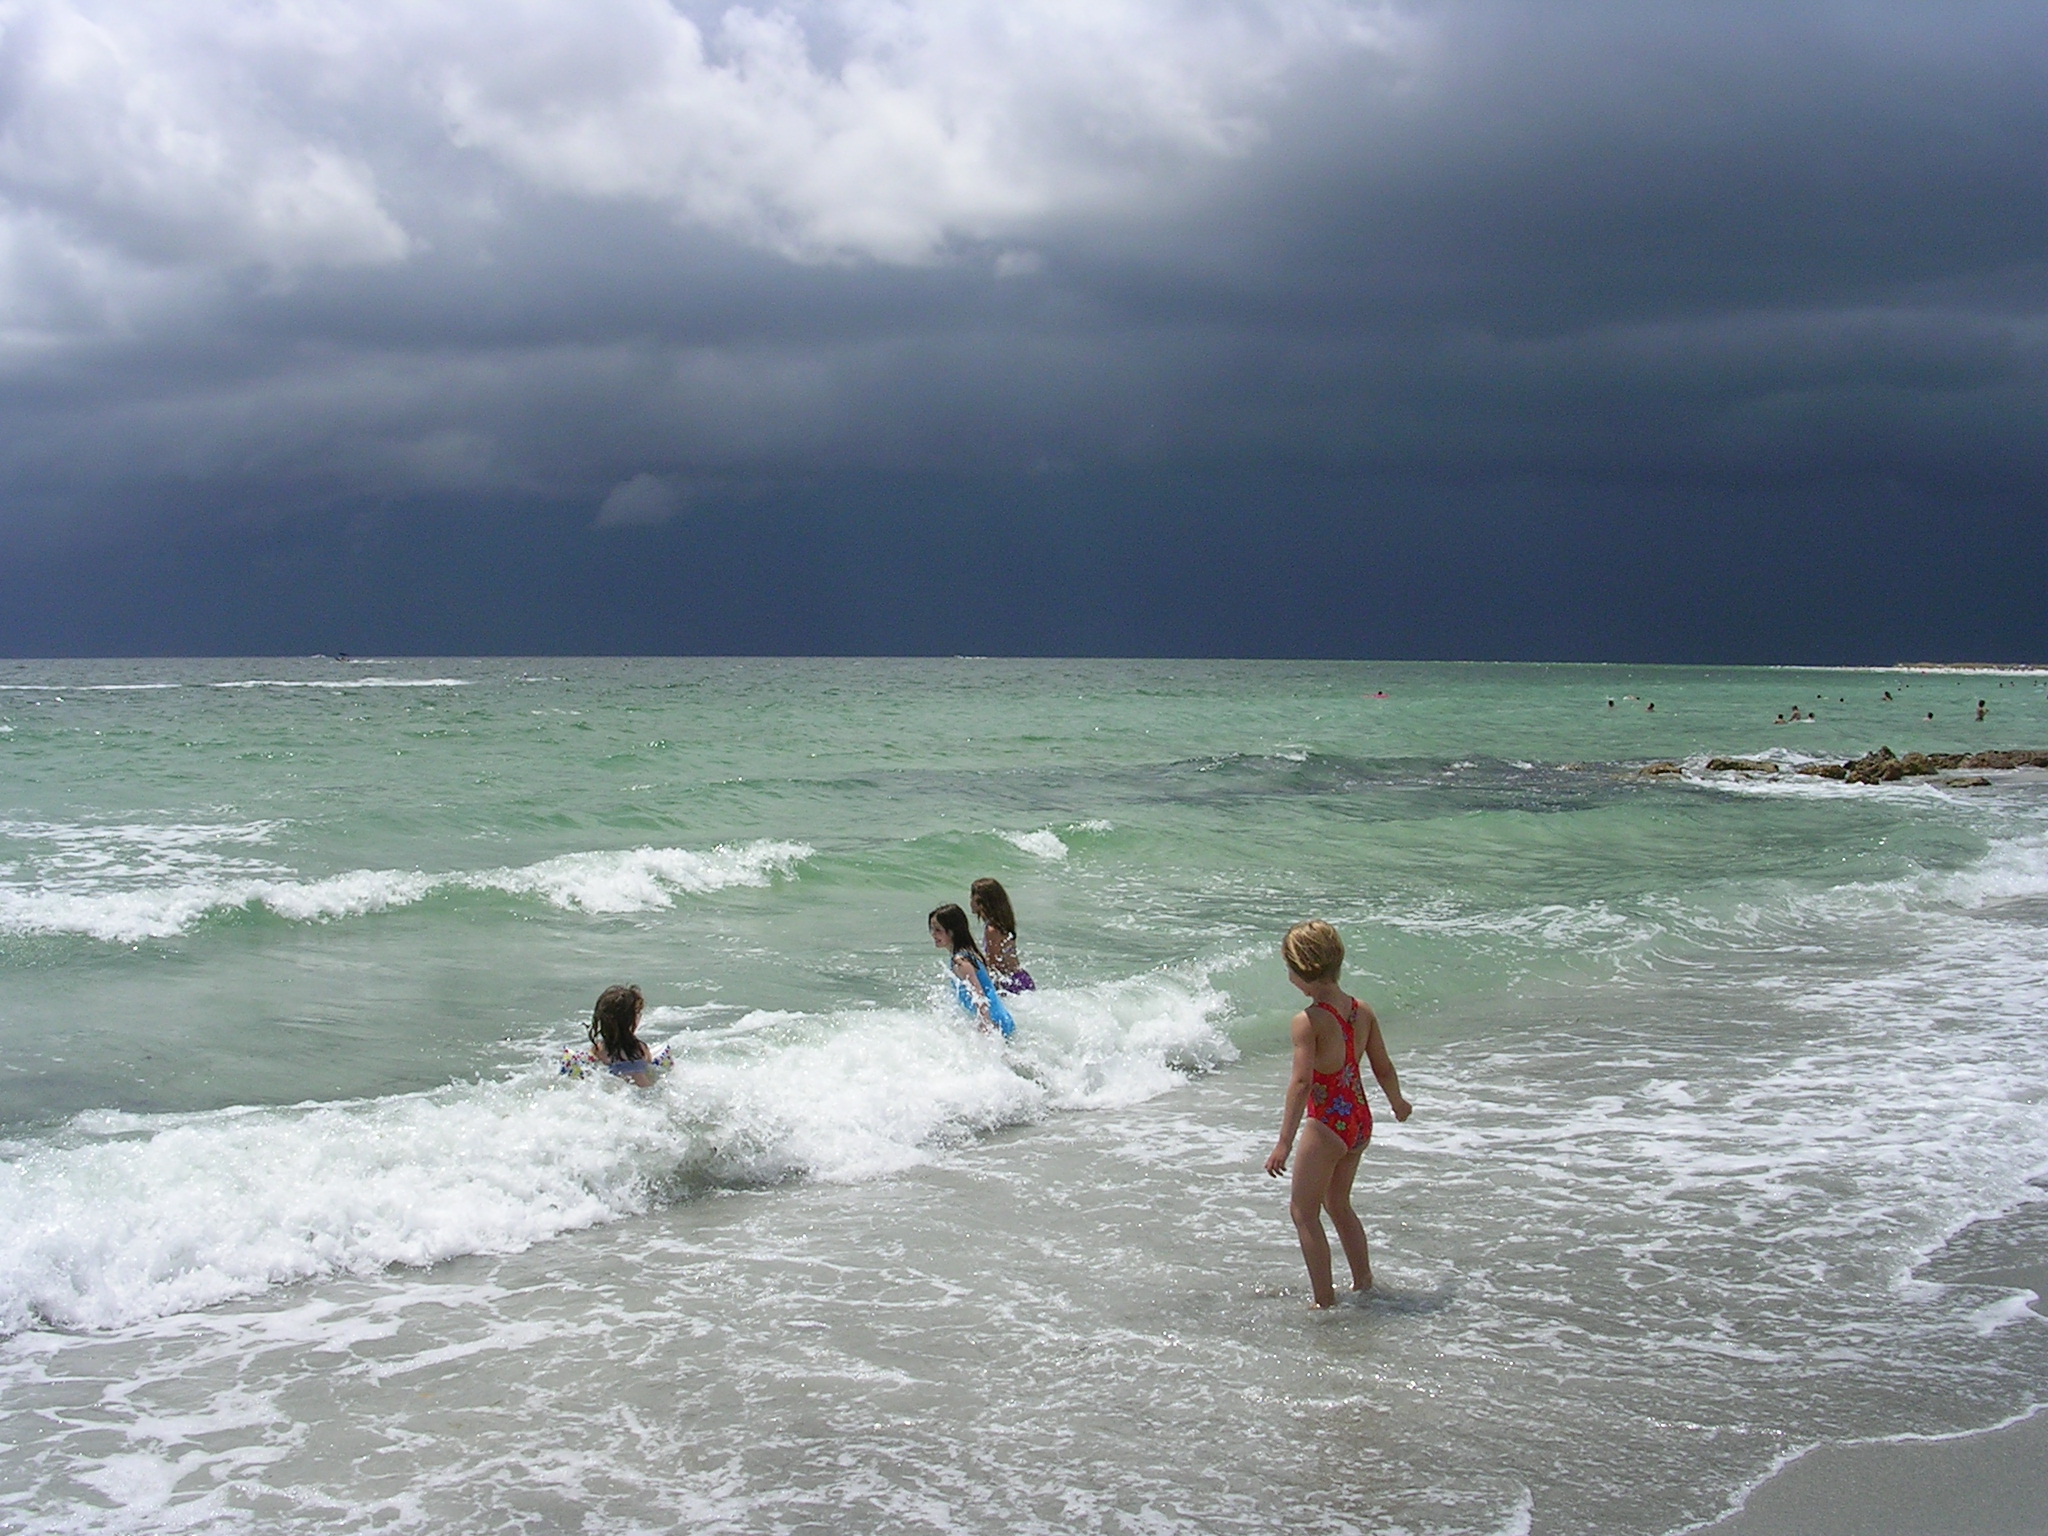 Storm over Lido Beach, Sarasota